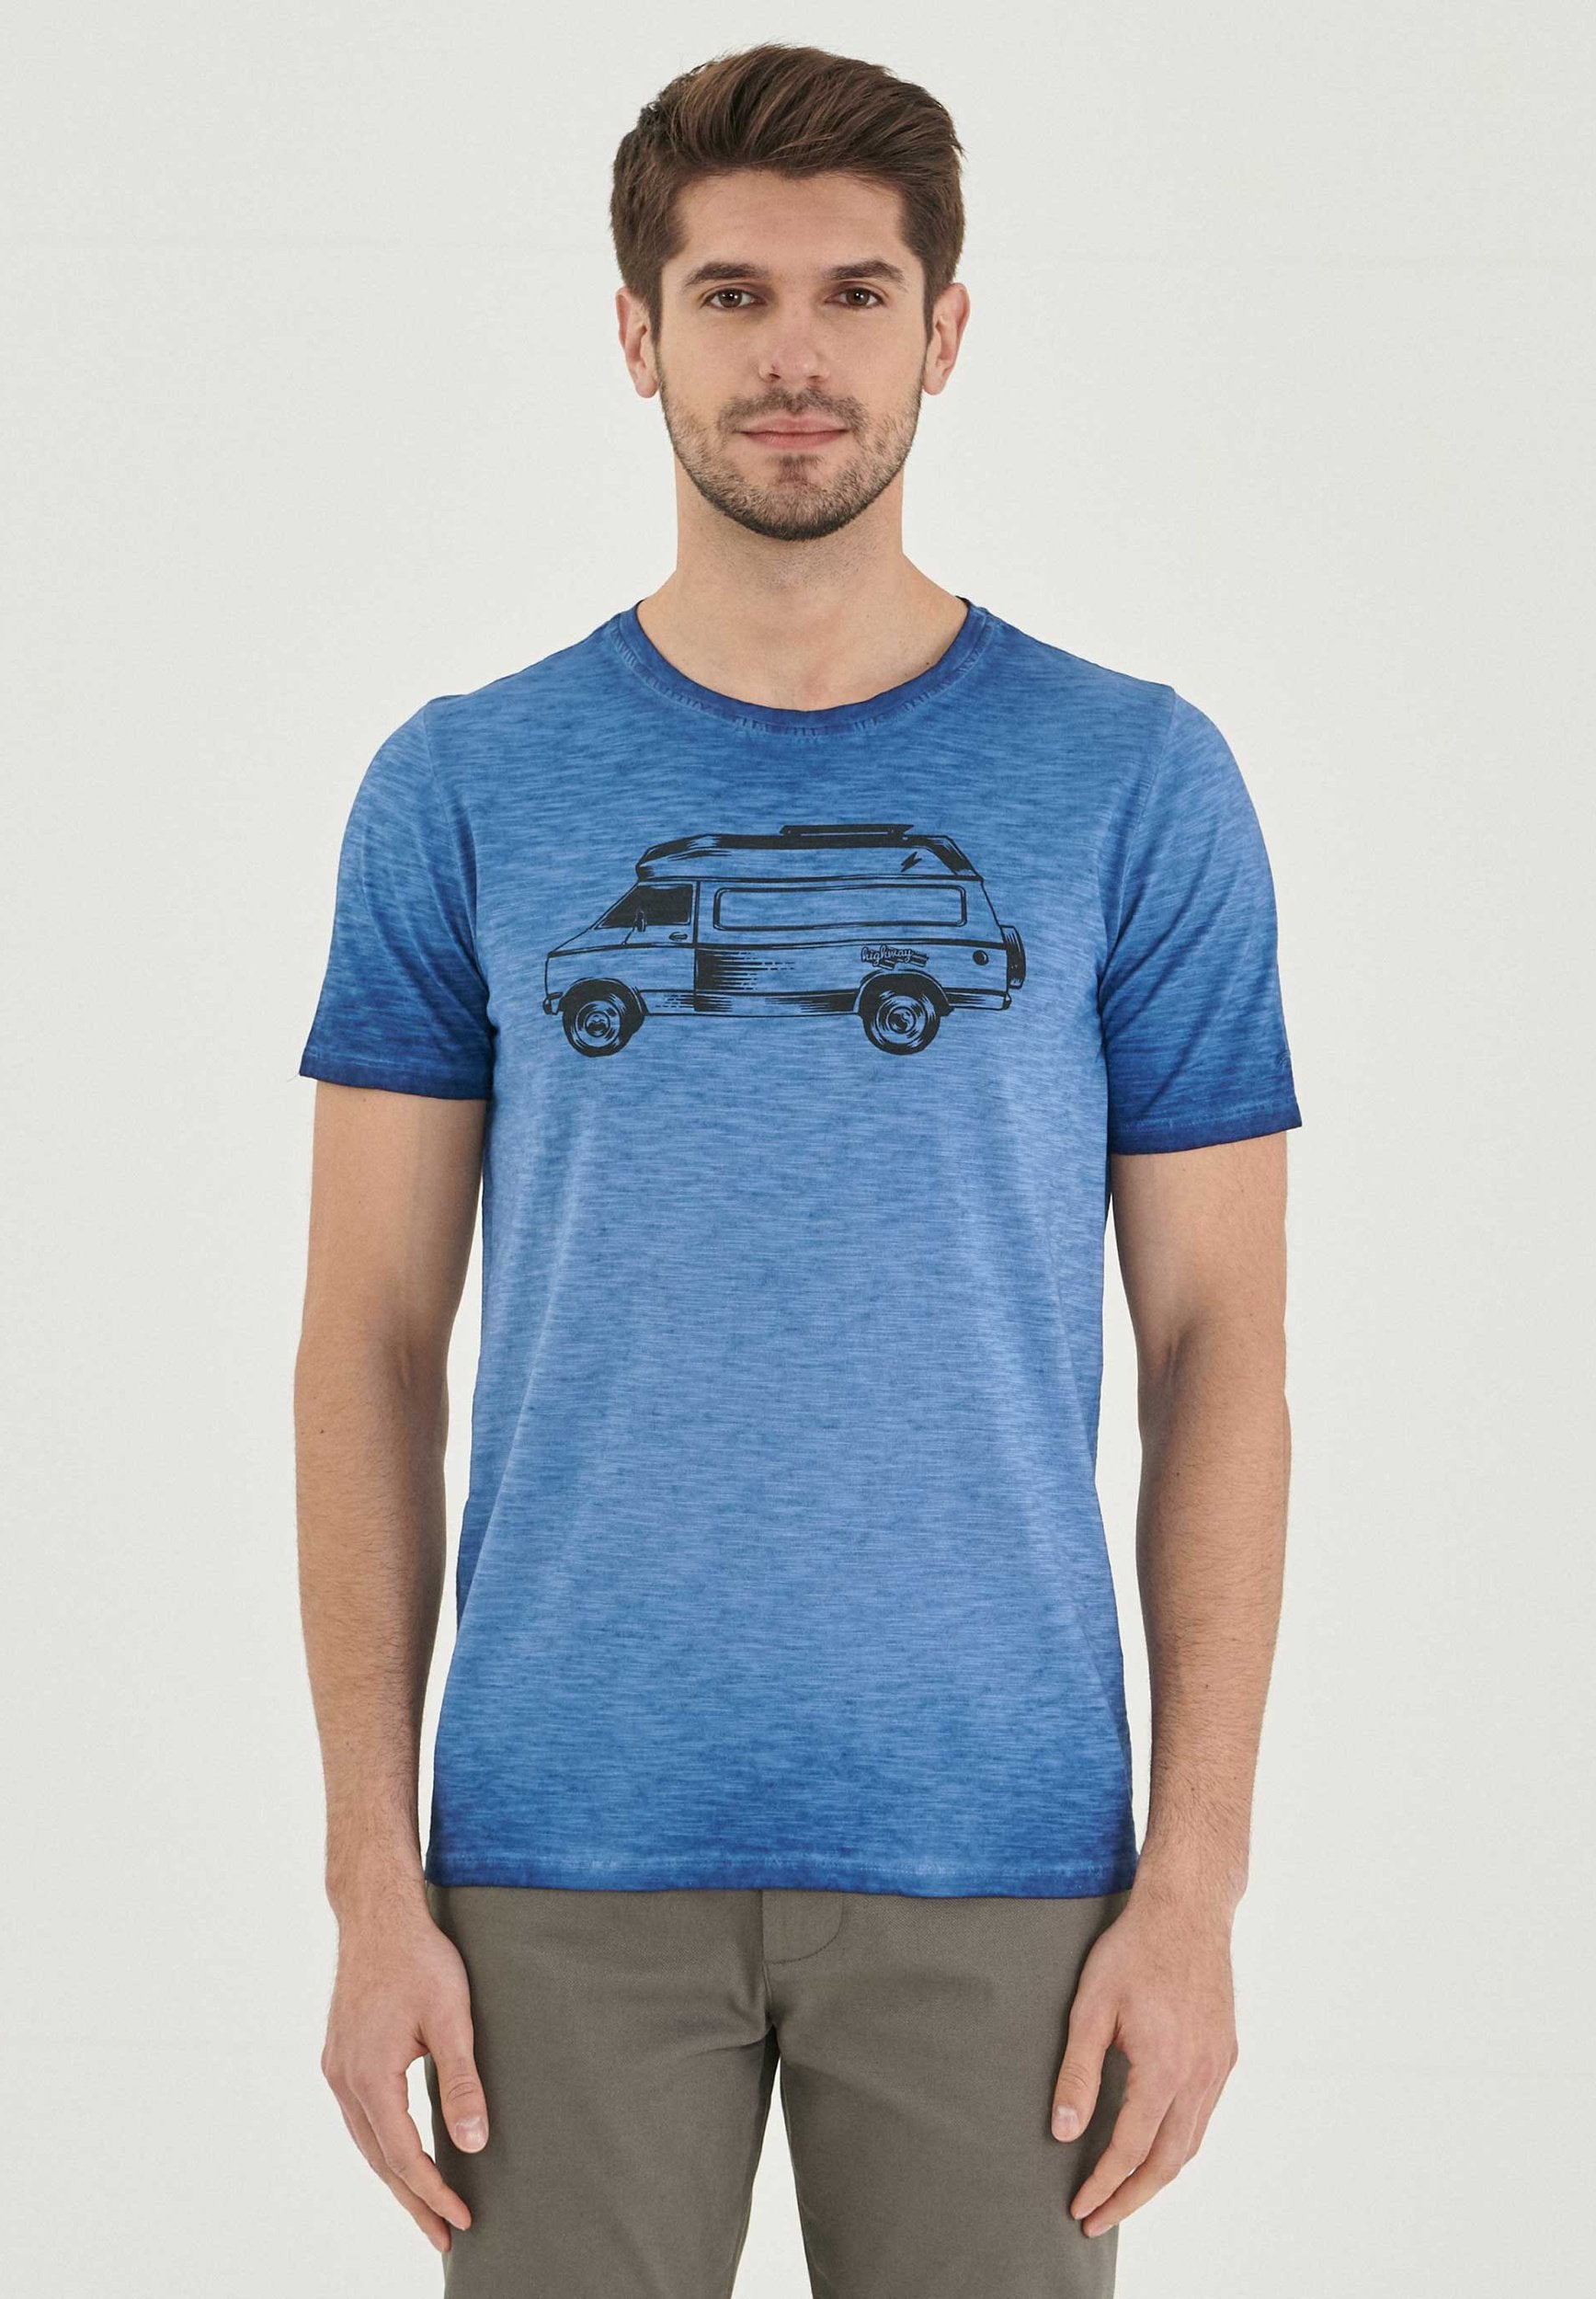 Garment Dyed T-Shirt aus Bio-Baumwolle mit Wagen-Print